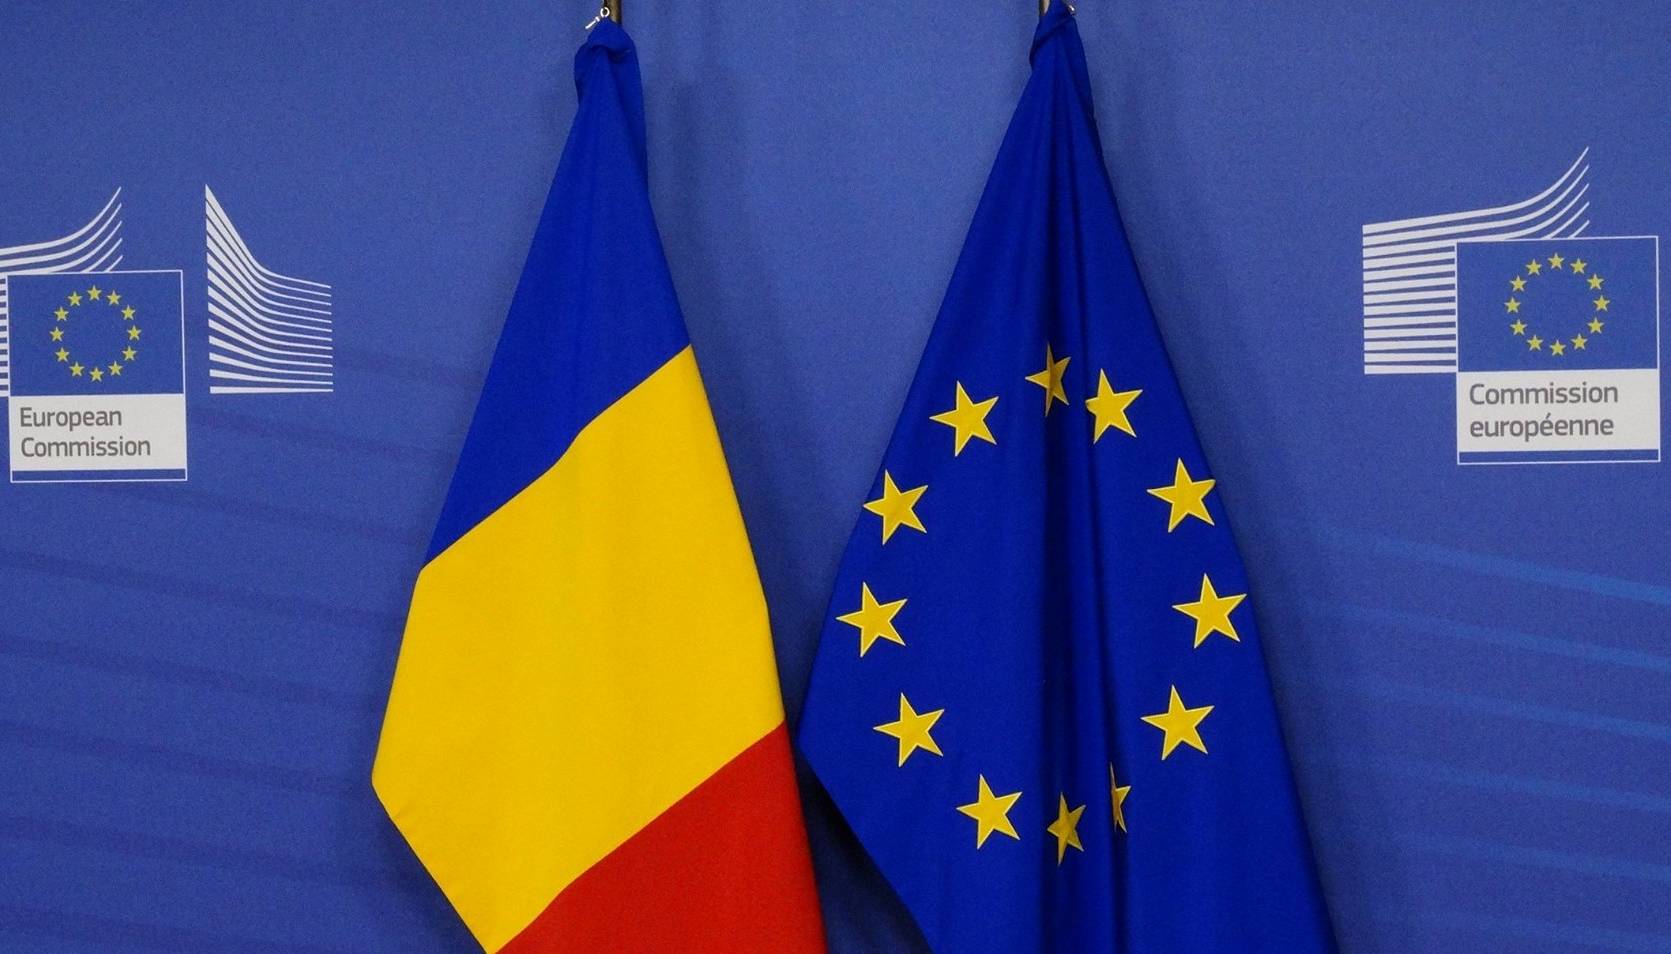 La Commission européenne accordera de nouveaux prêts à l'Ukraine